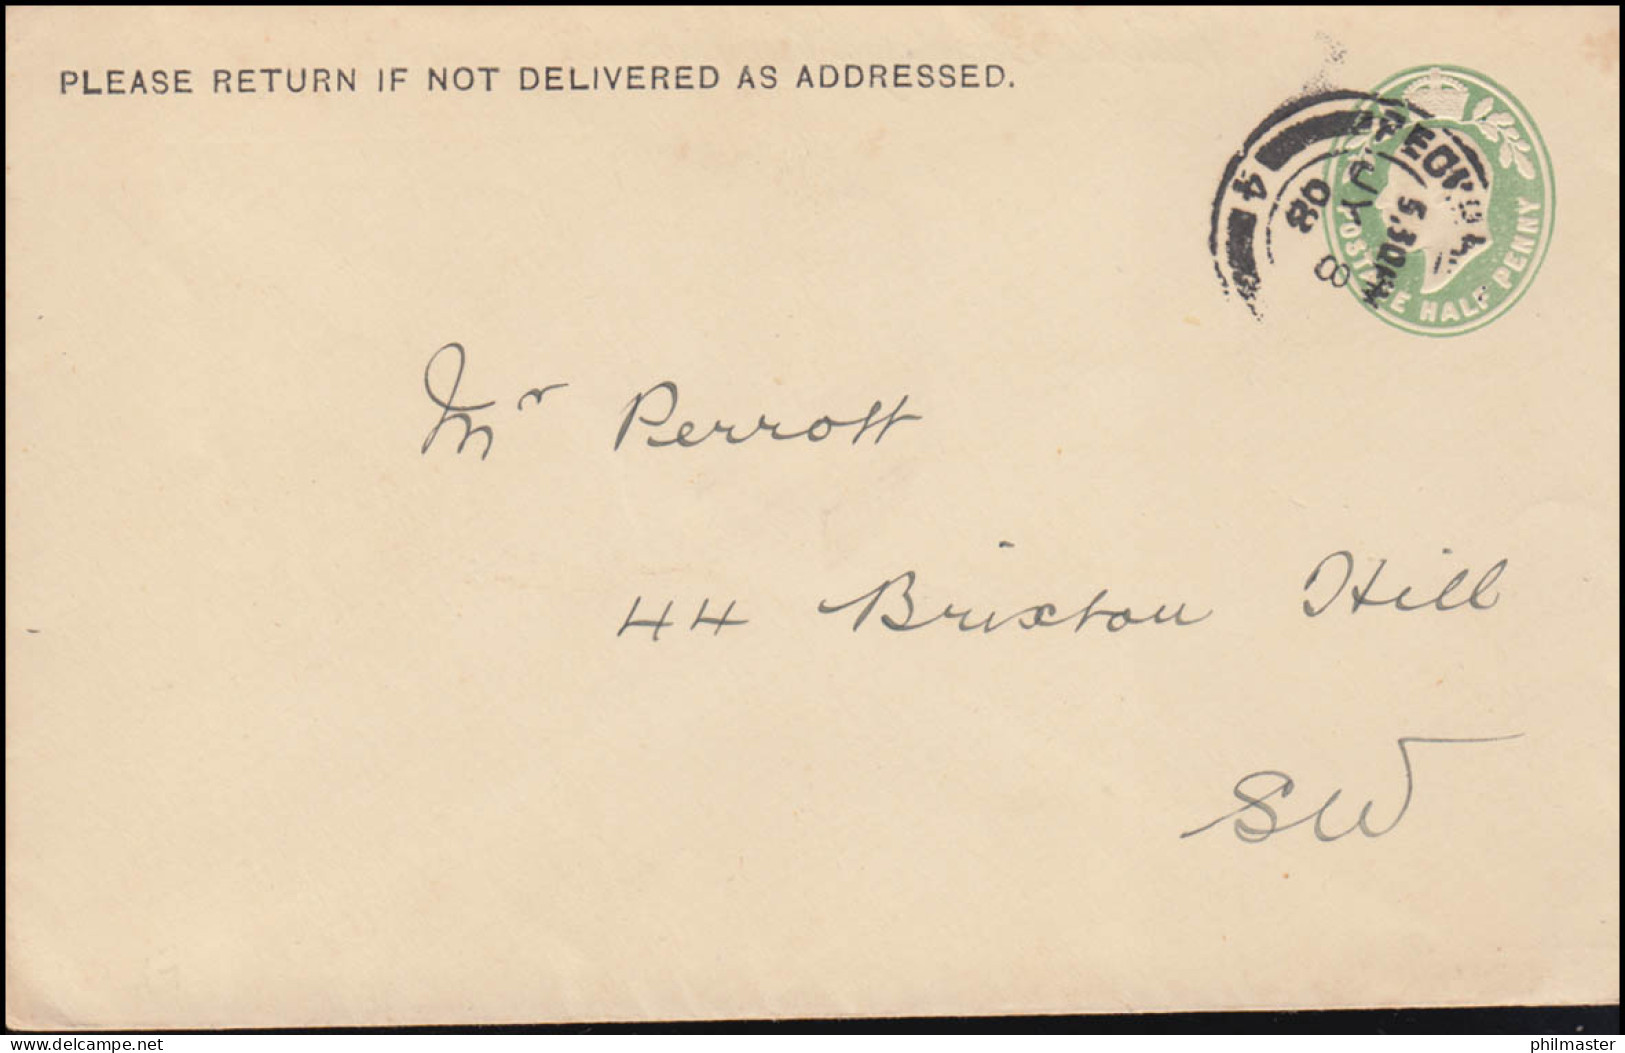 Großbritannien Umschlag König Edward VII. Halfpenny Hellgrün, London 8.8.1908 - Aardolie